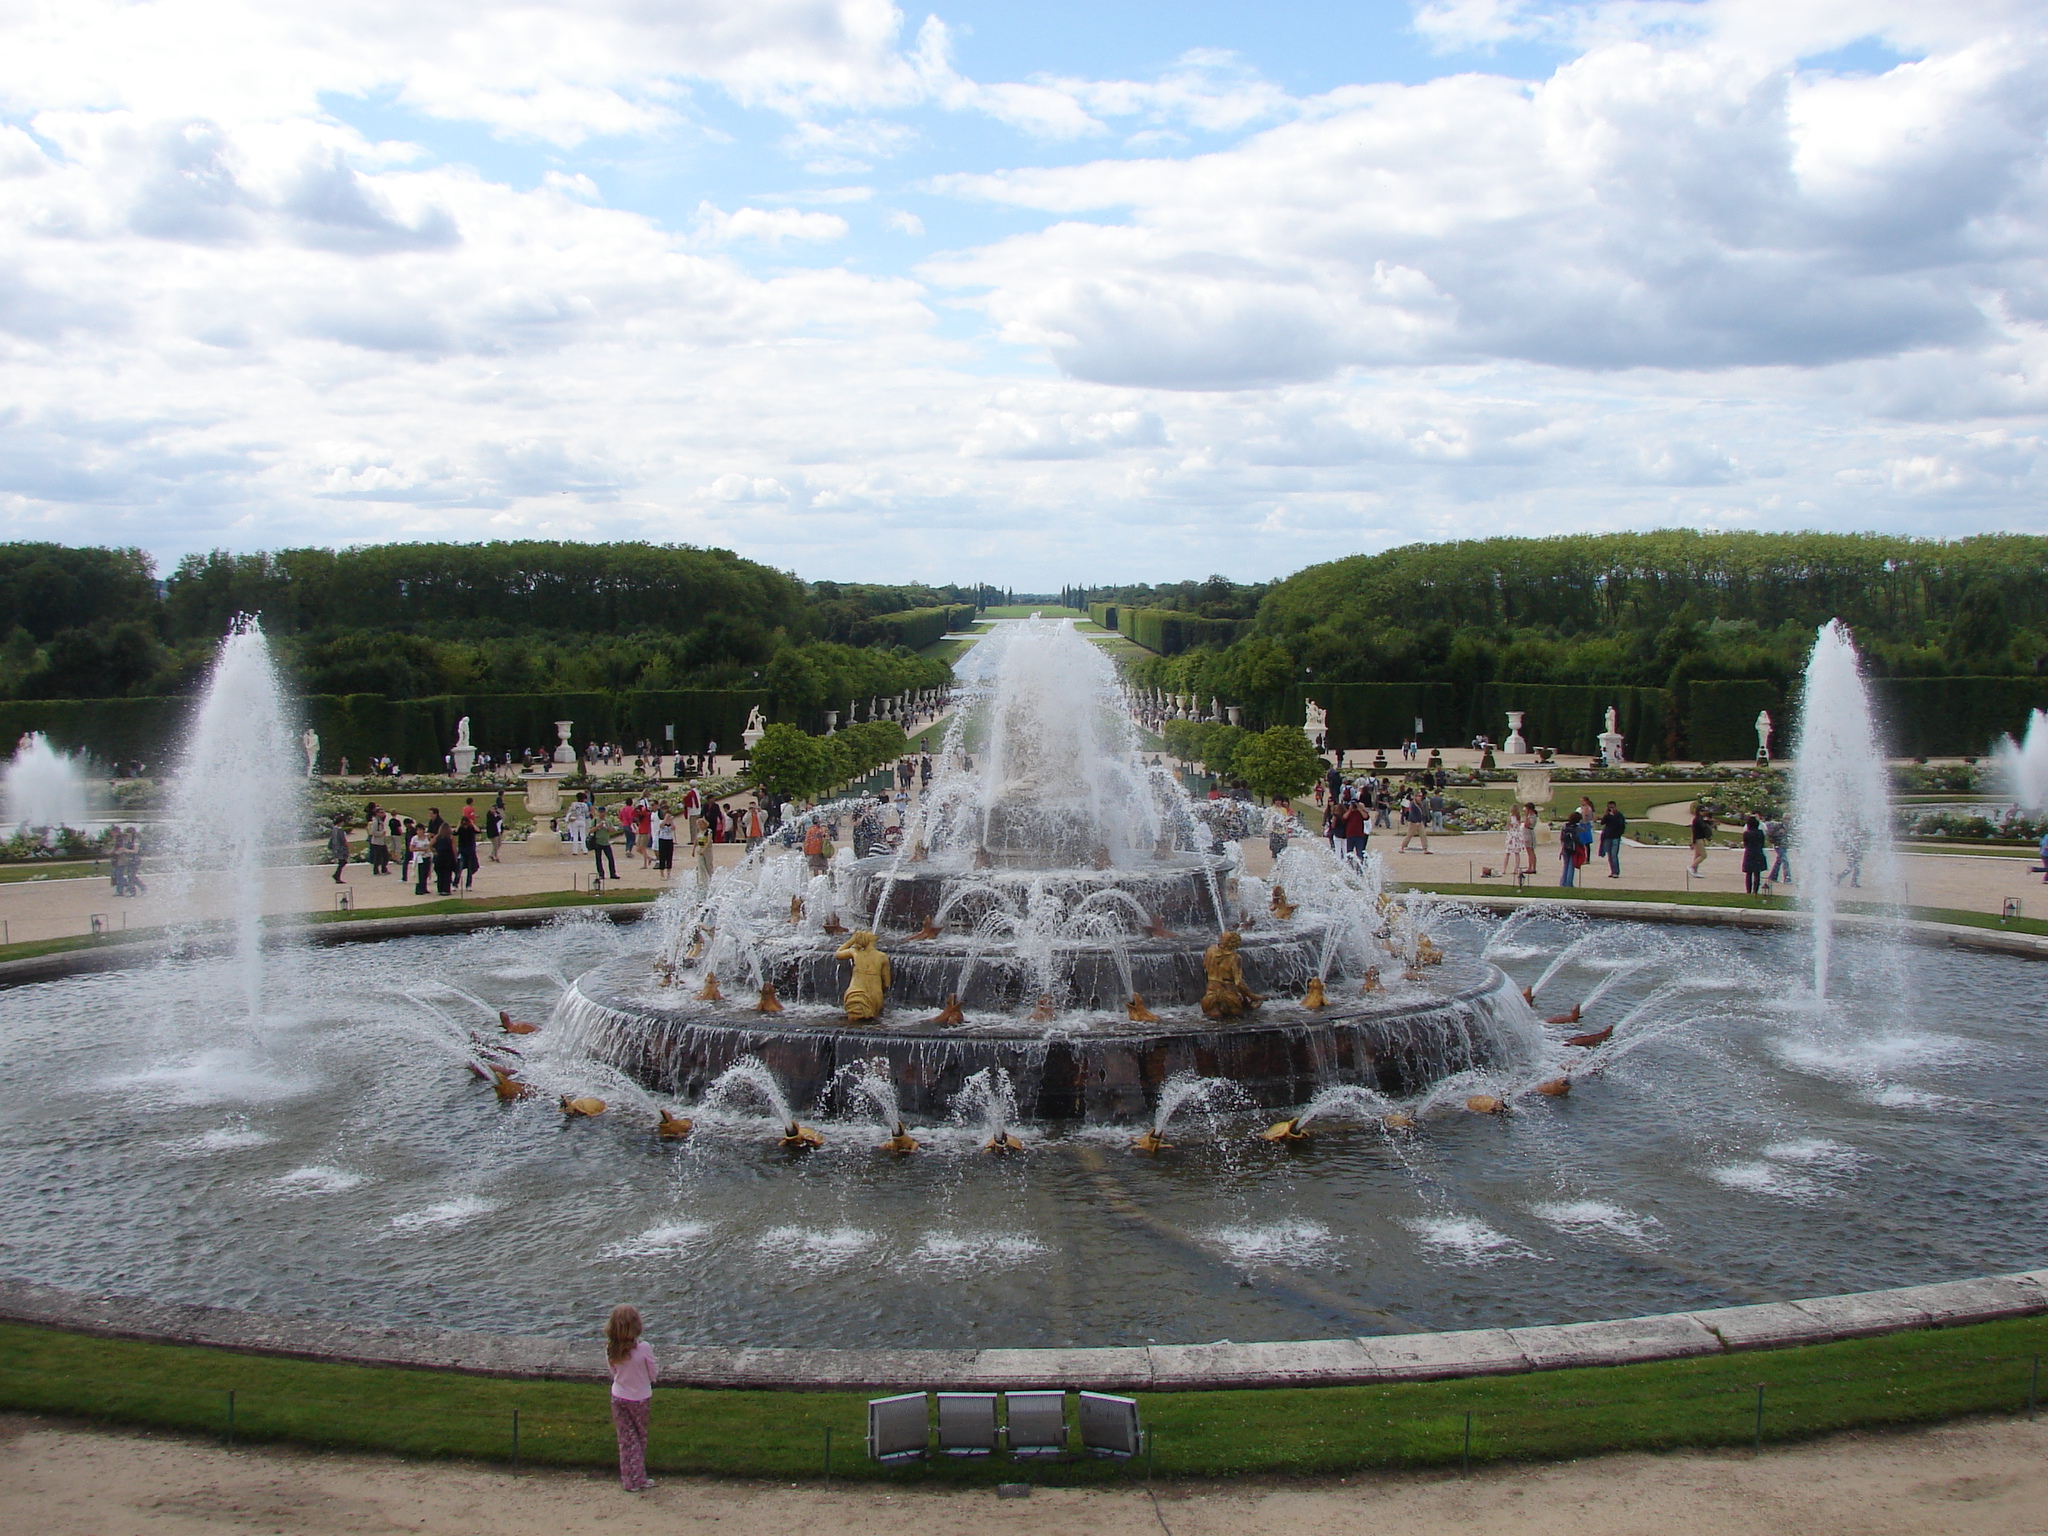 і взагалі по палацах Франції ми не можемо не заглянути в самий напевно відомий палацово-парковий комплекс Франції